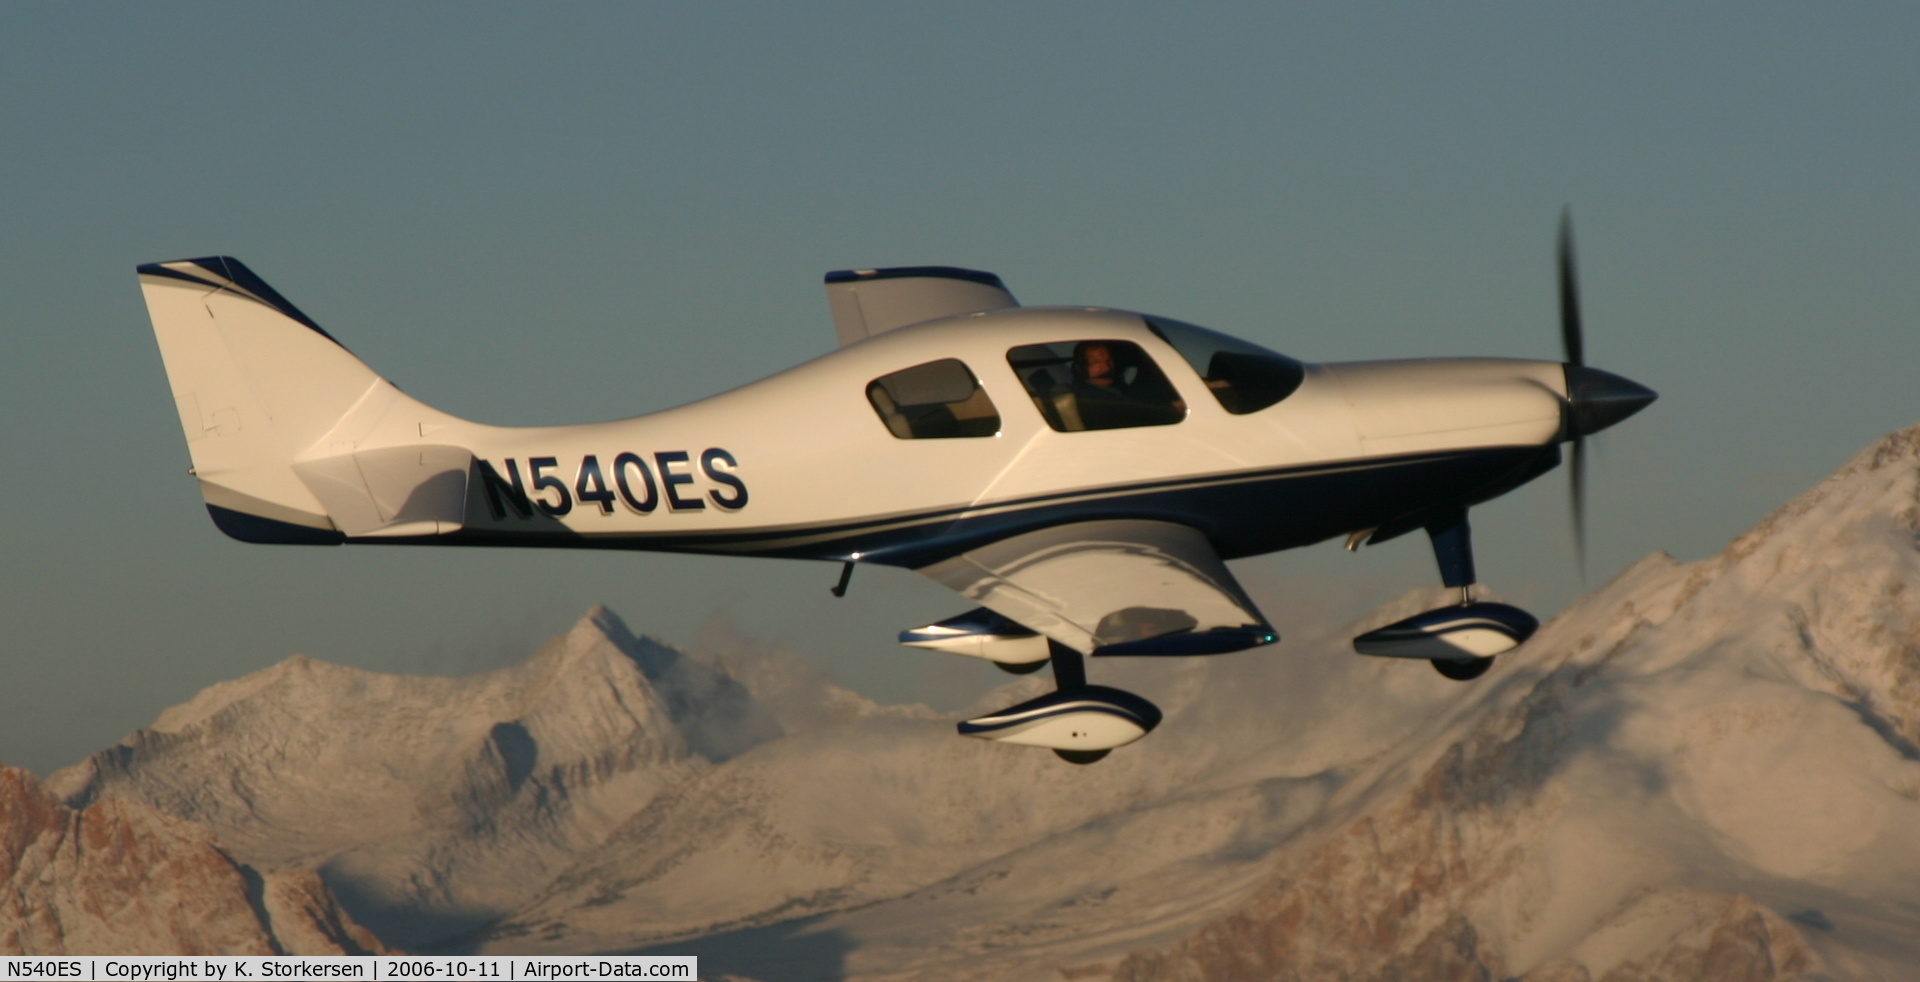 N540ES, 2002 Lancair ES C/N ES-142-FB, N540ES over Sierra Nevadas